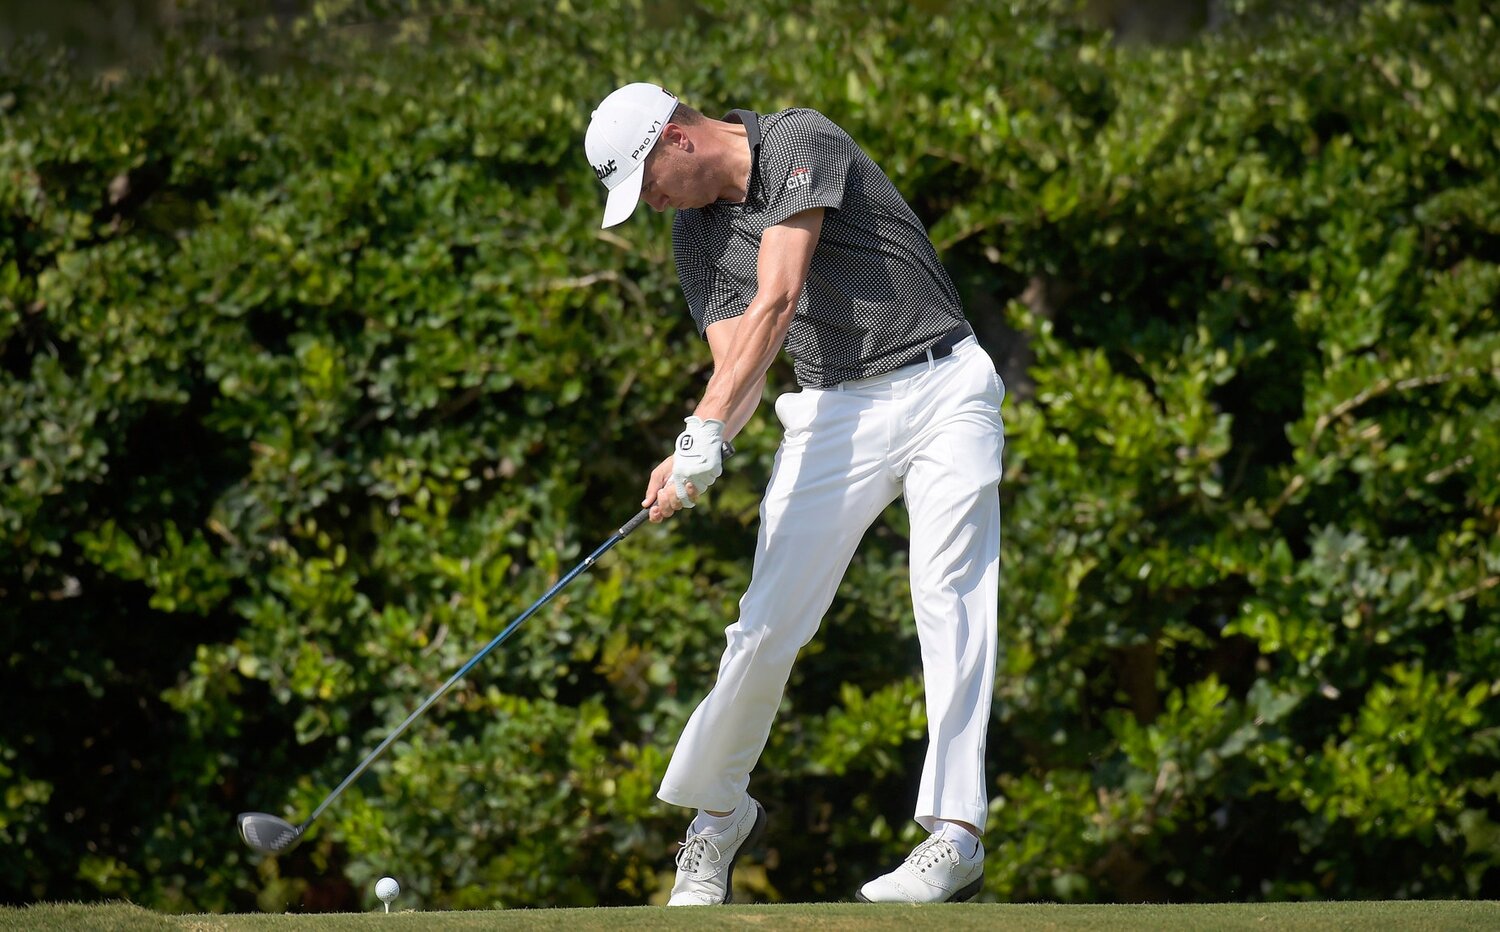 Justin Thomas est un excellent exemple démontrant l’importance de la rotation des hanches afin de générer de la vitesse et de la puissance dans l’élan de golf.